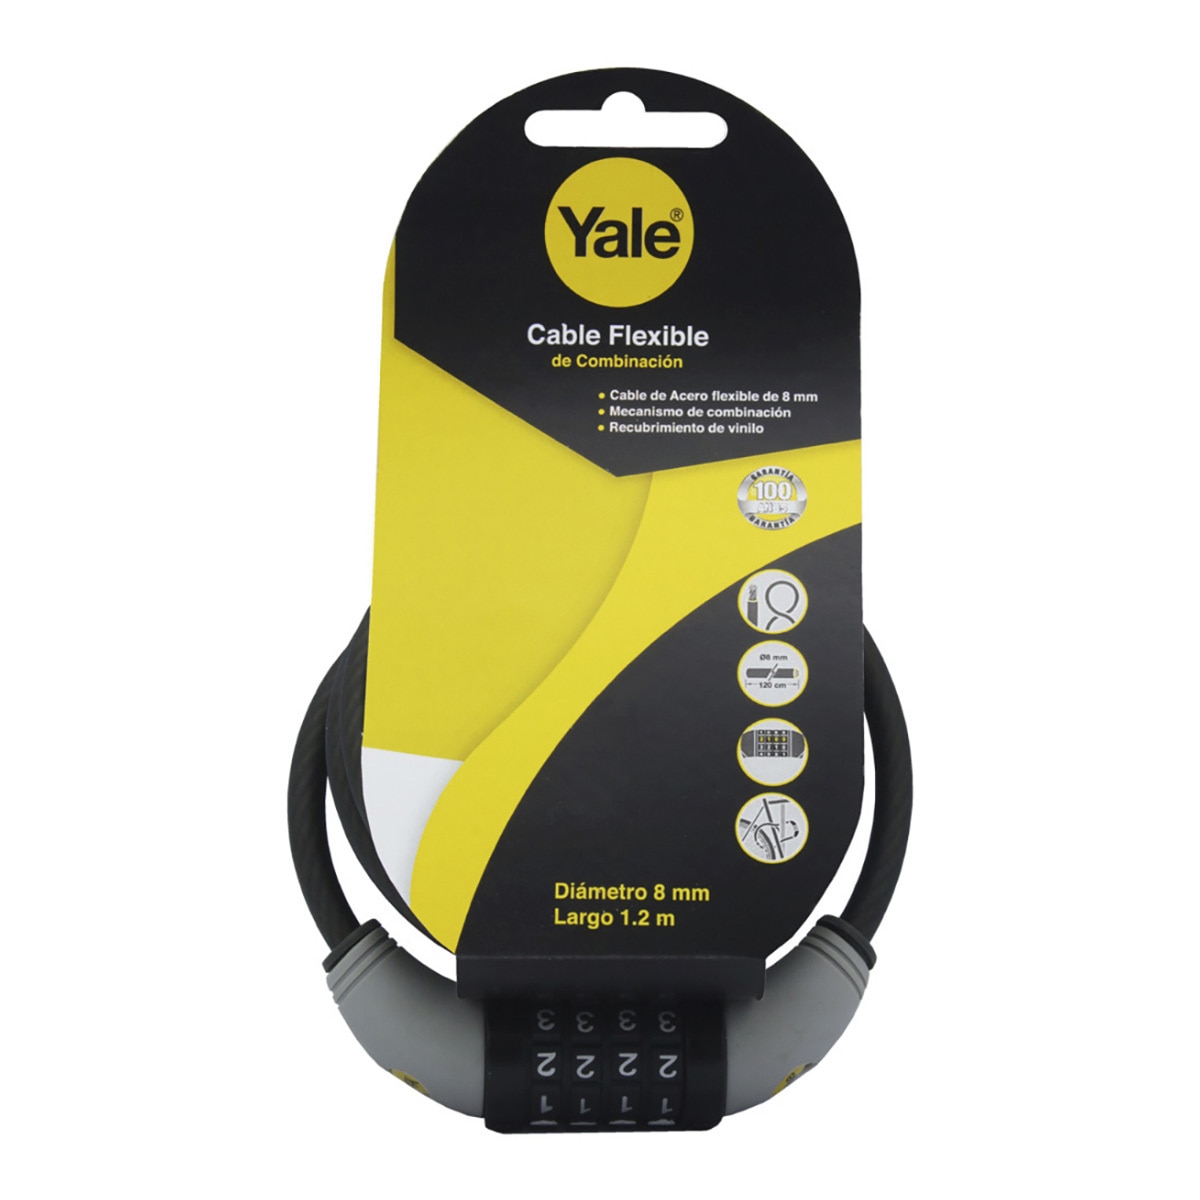 Yale, Cable Flexible de Combinación 8x1200 mm